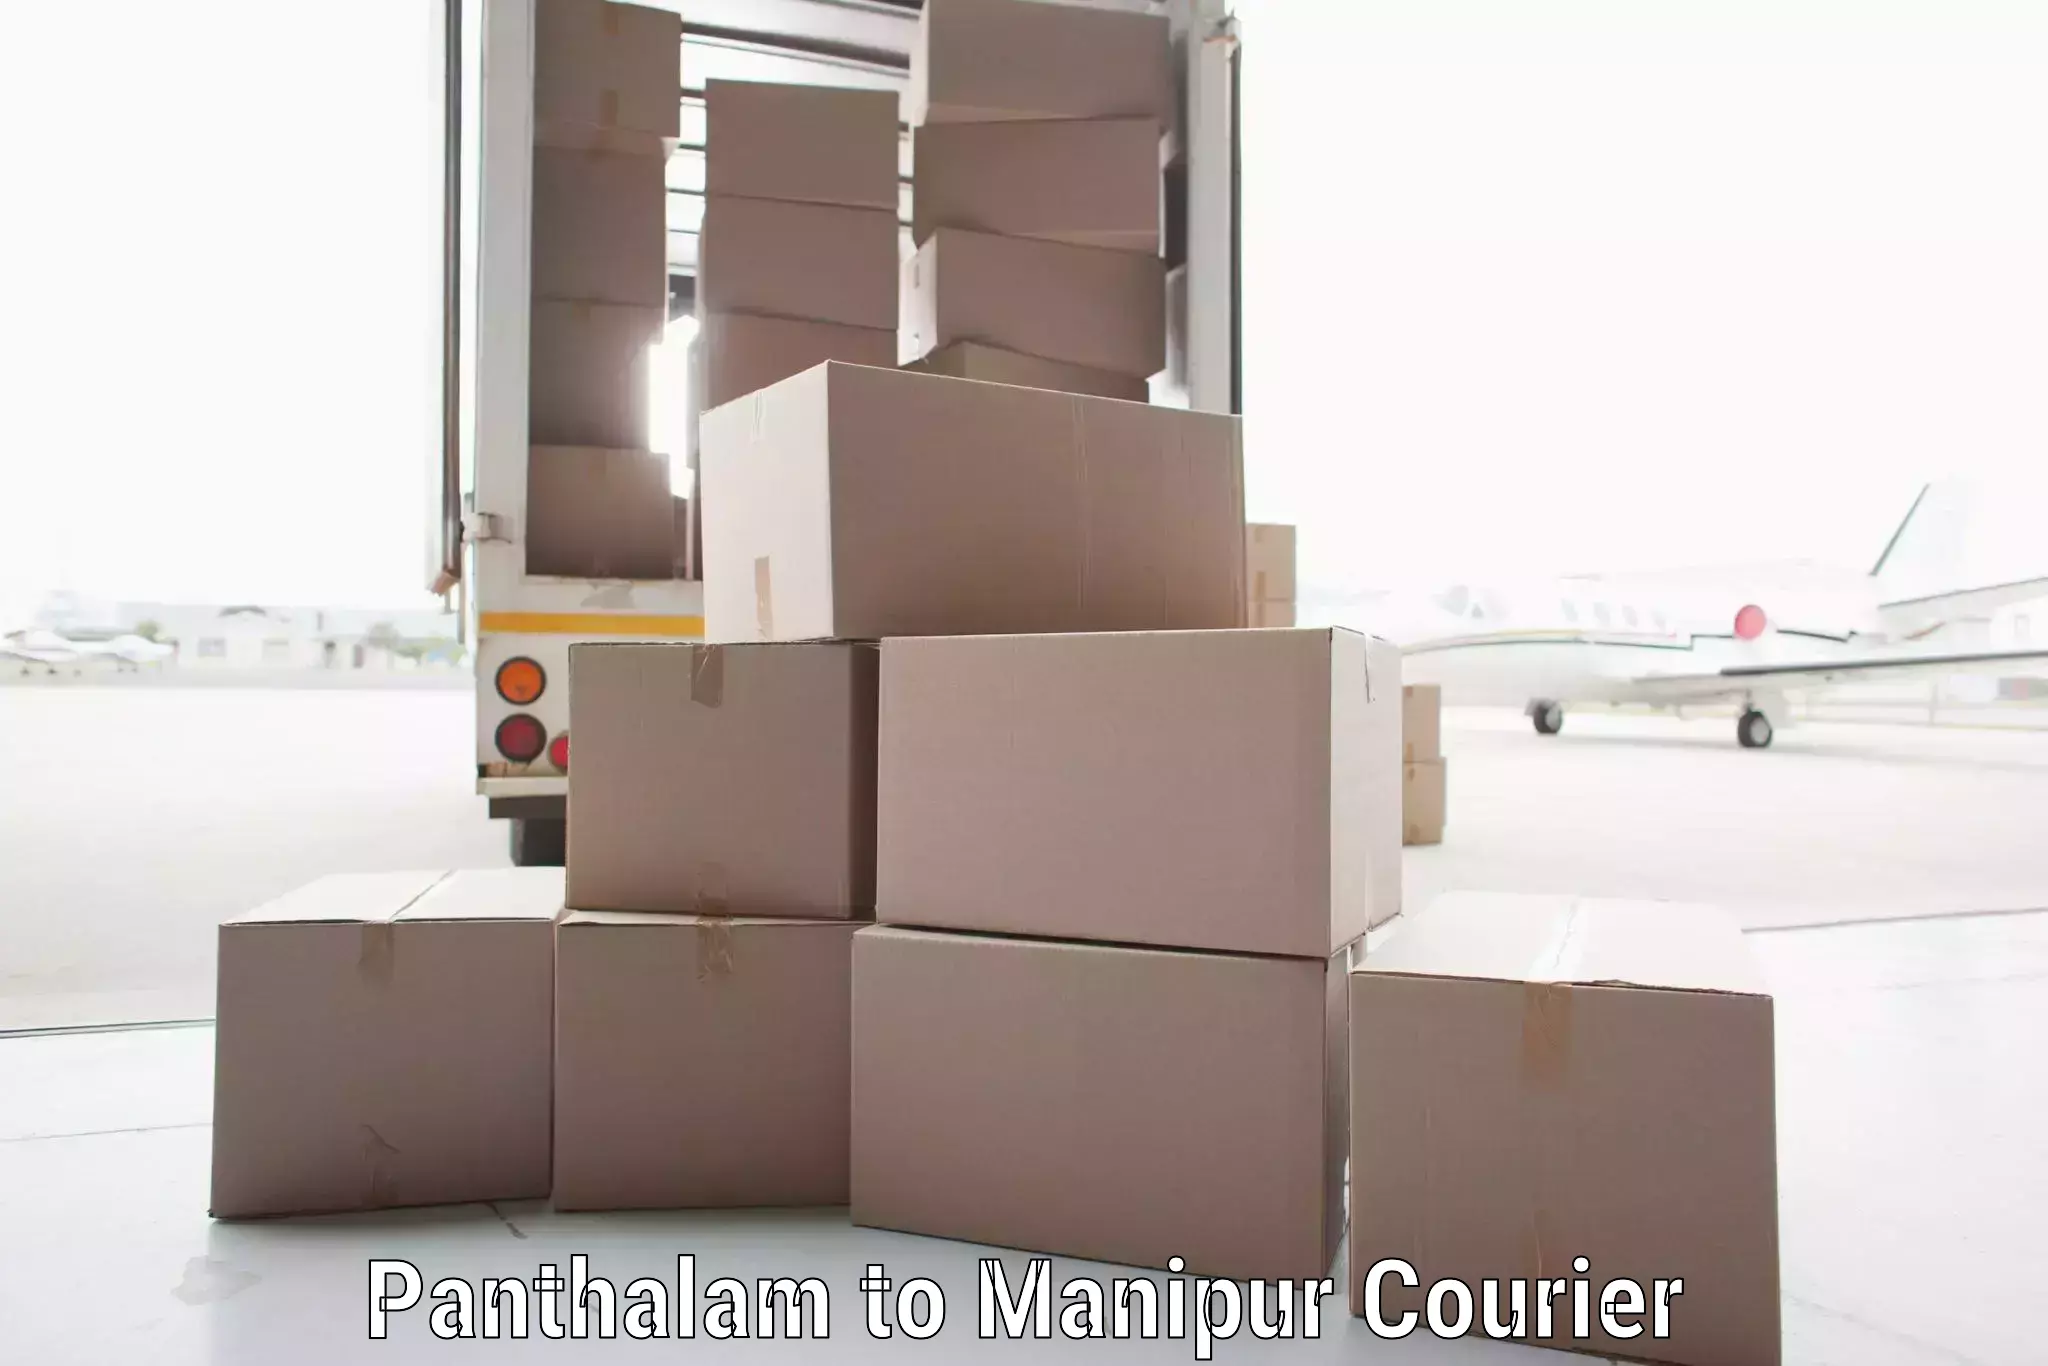 High-speed parcel service Panthalam to Jiribam